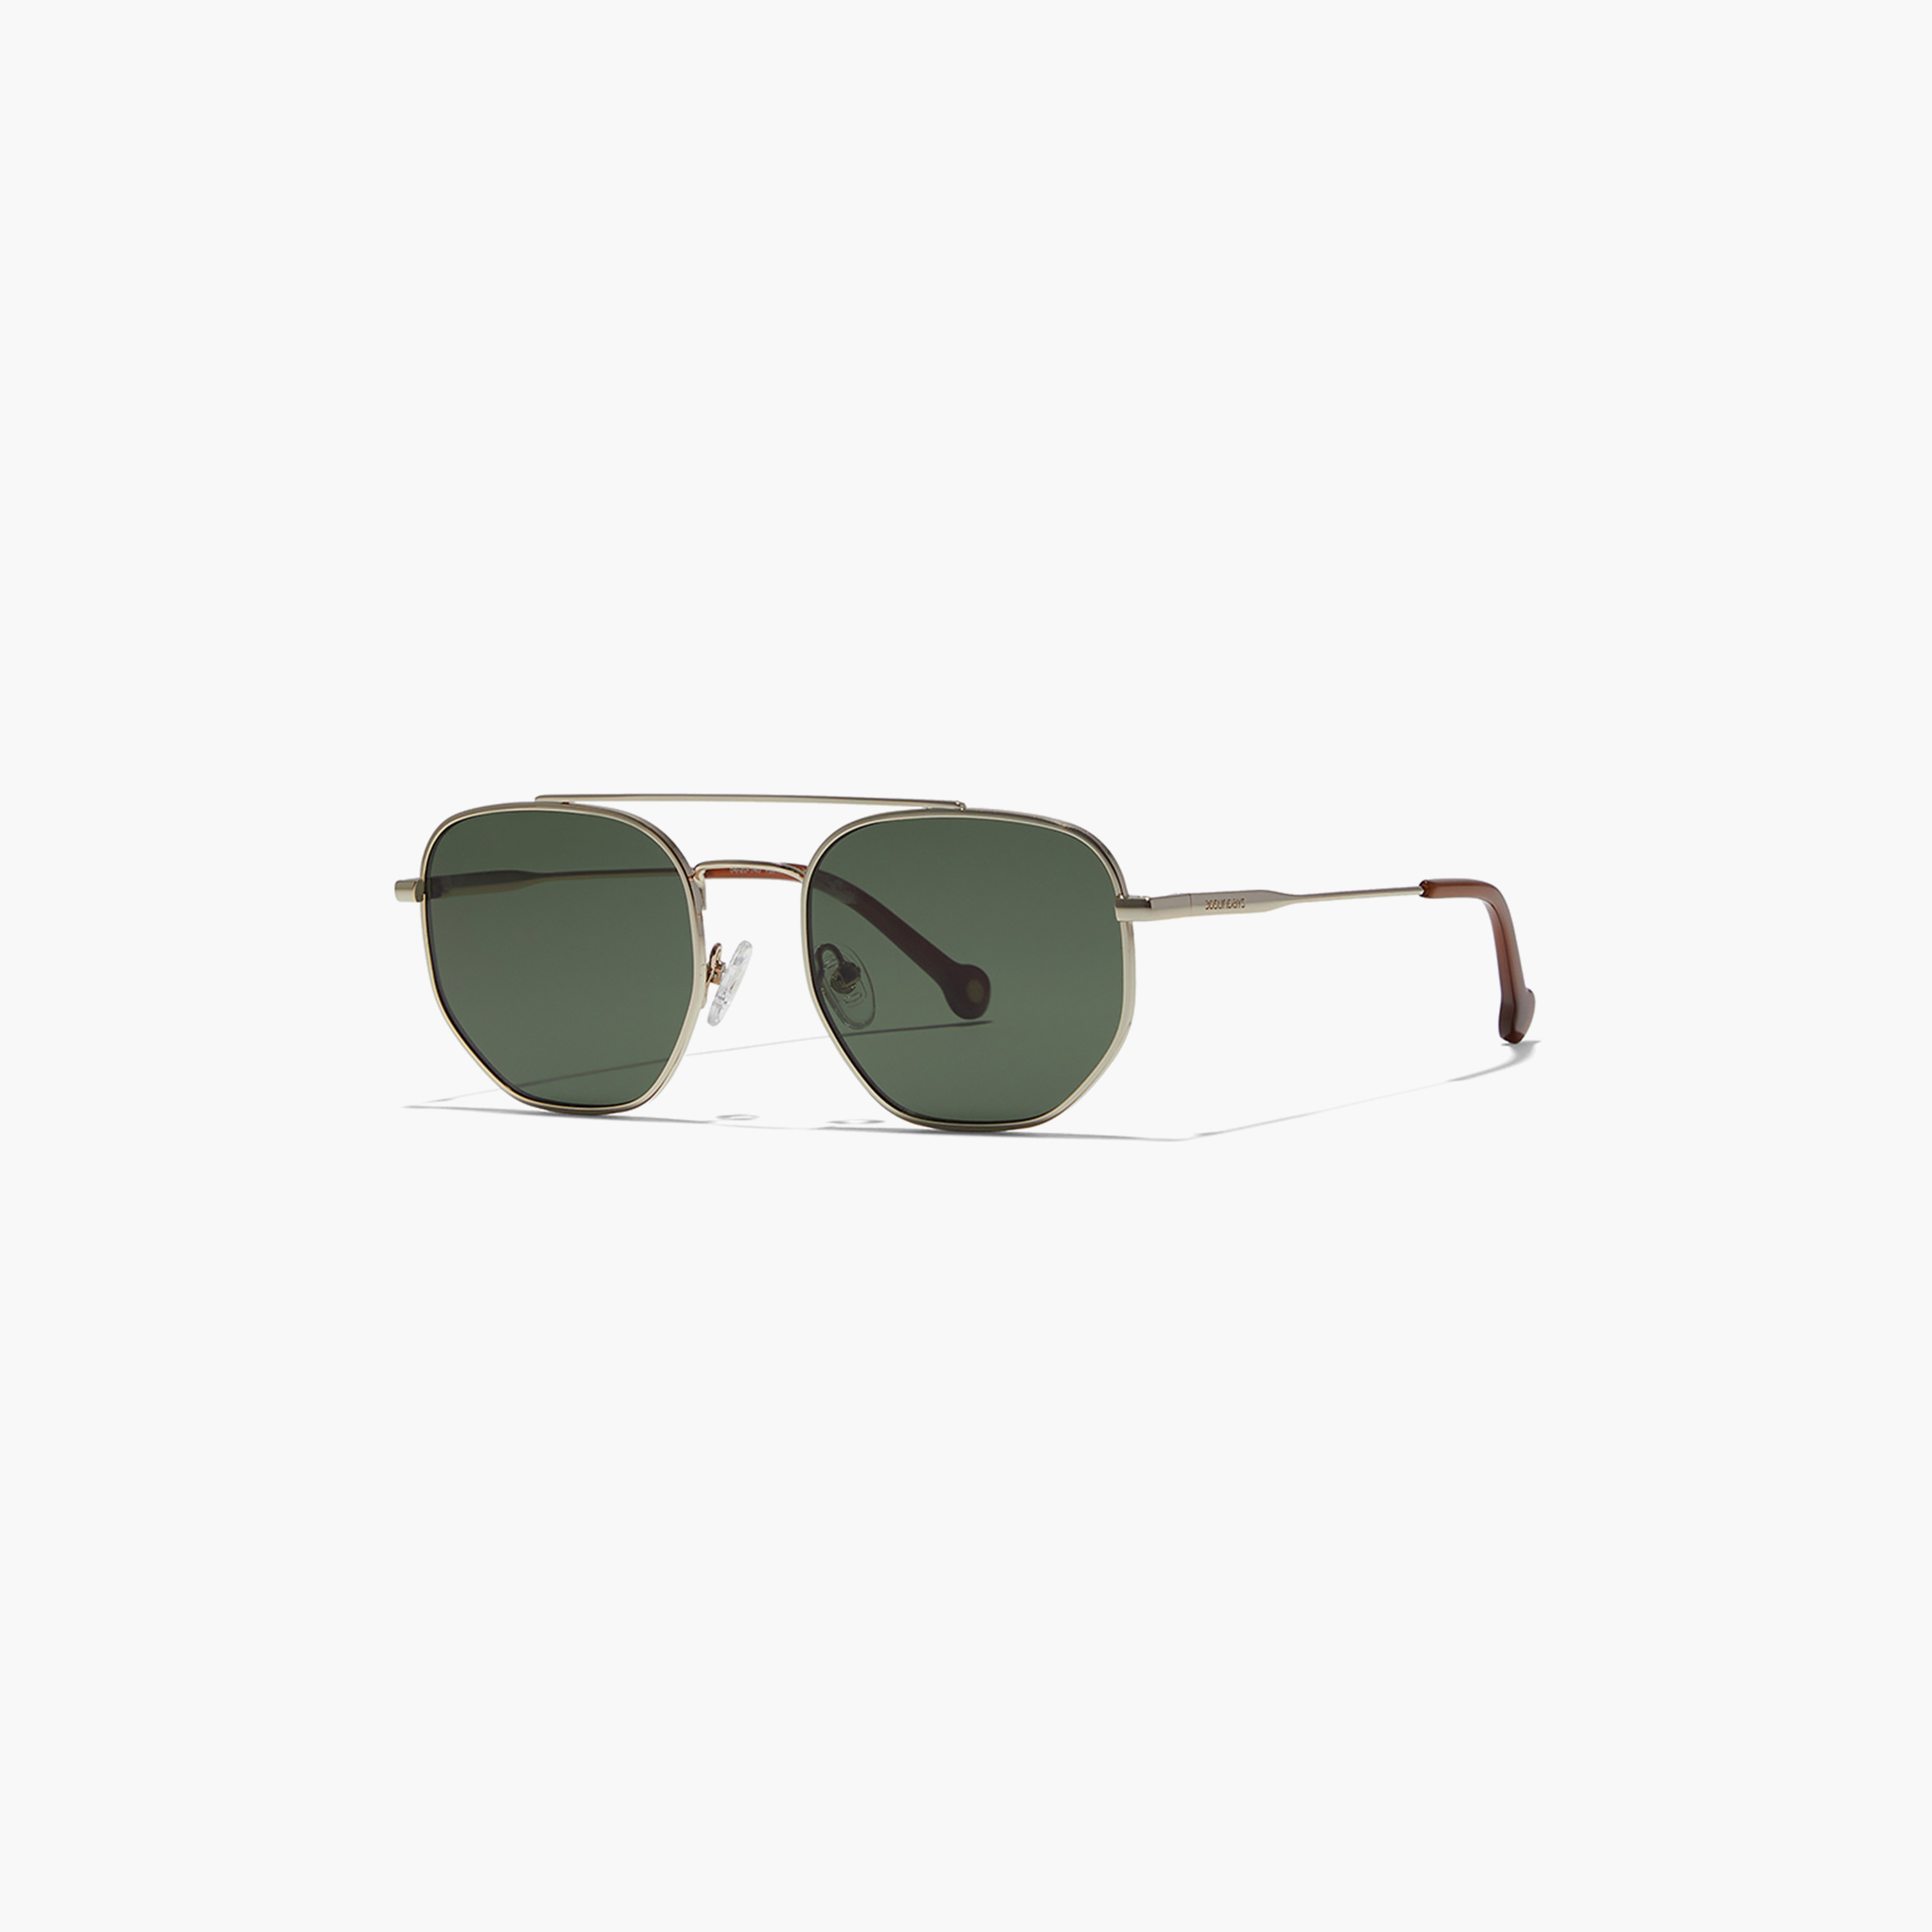 Buy Men Bold Allure Rayban Sunglasses 301 Green Lens (FT142)